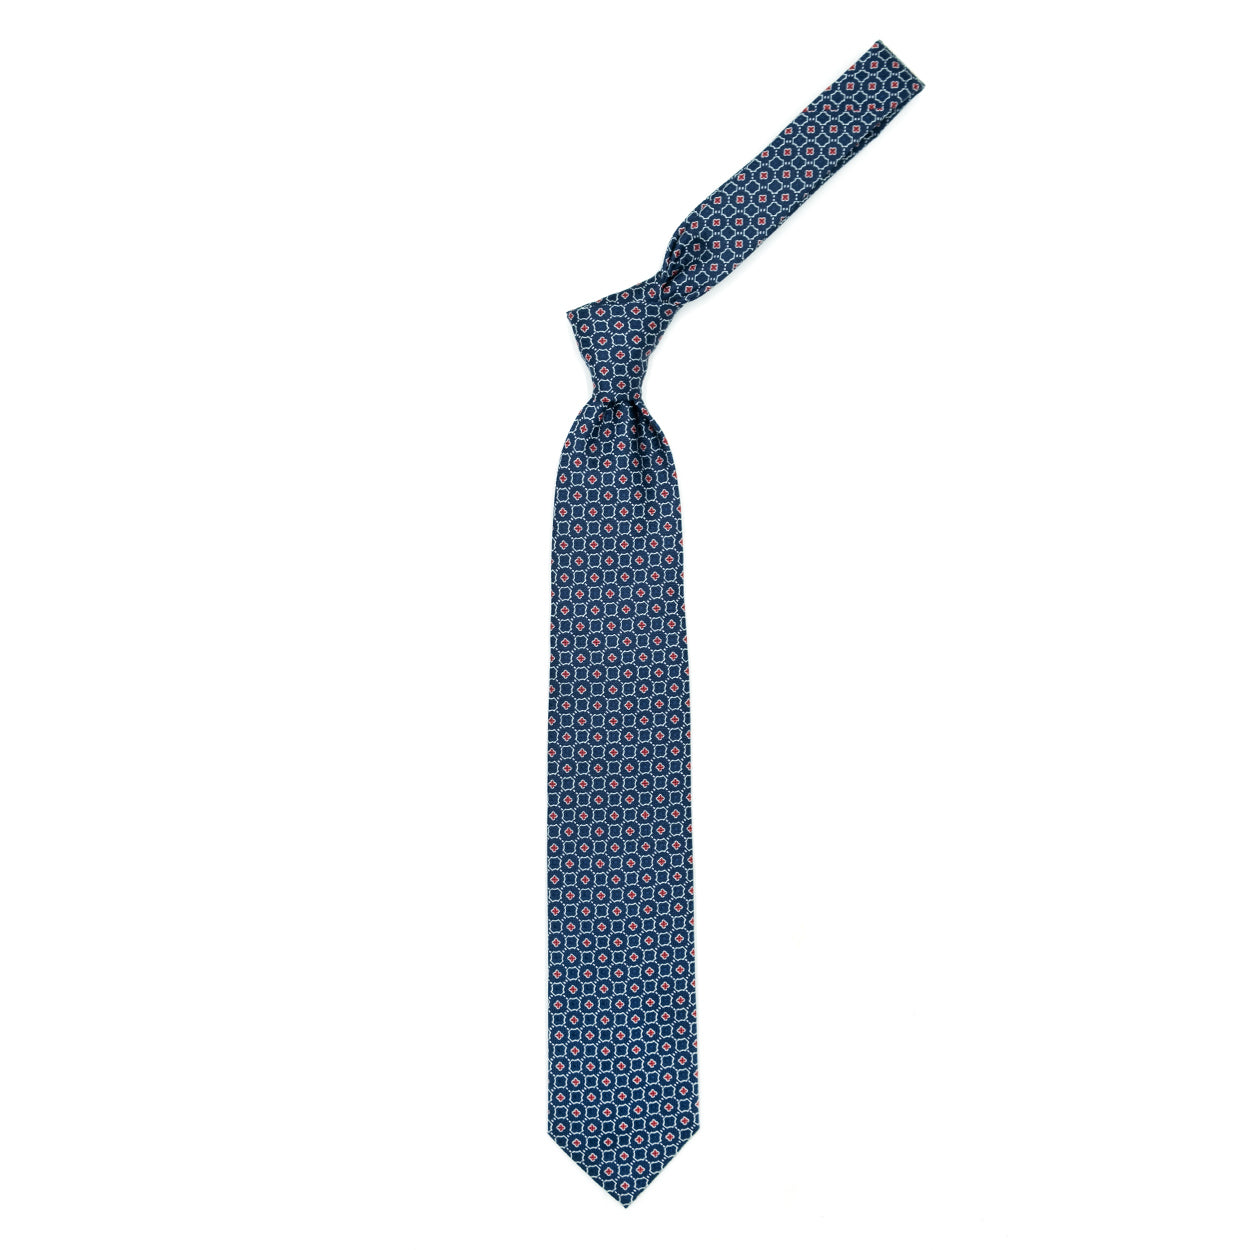 Cravatta blu con pattern bianco e rosso